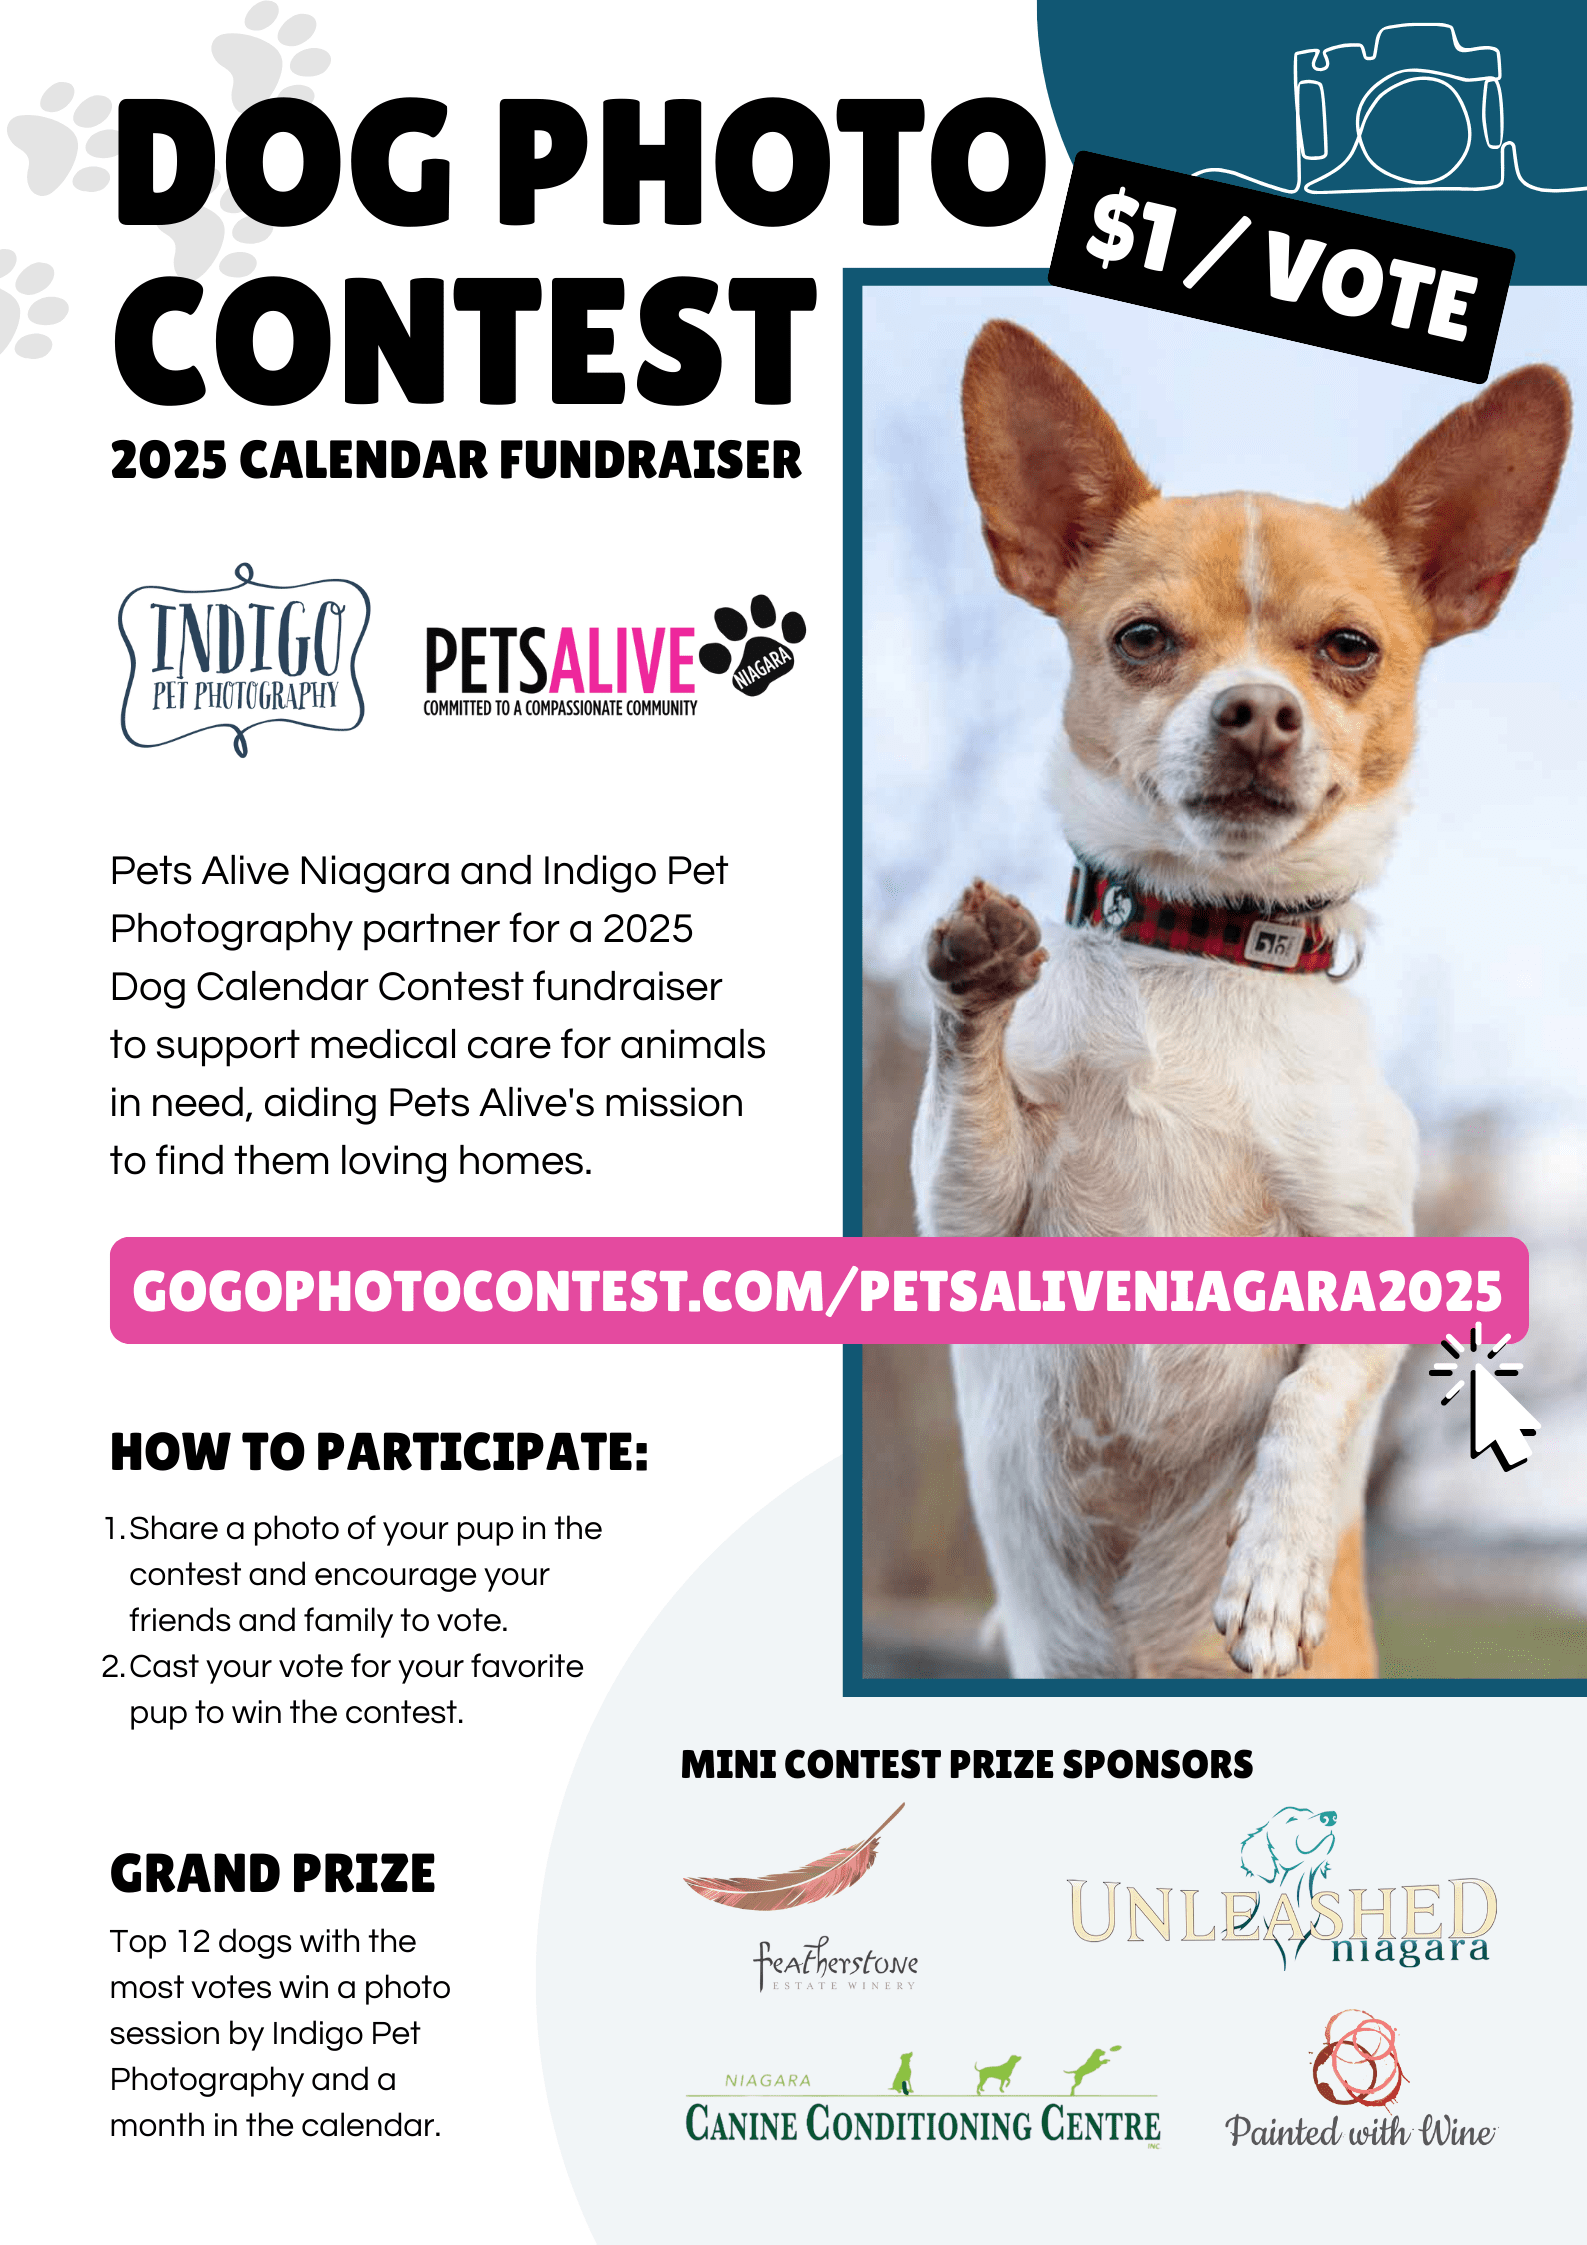 Dog Photo Contest Calendar 2025